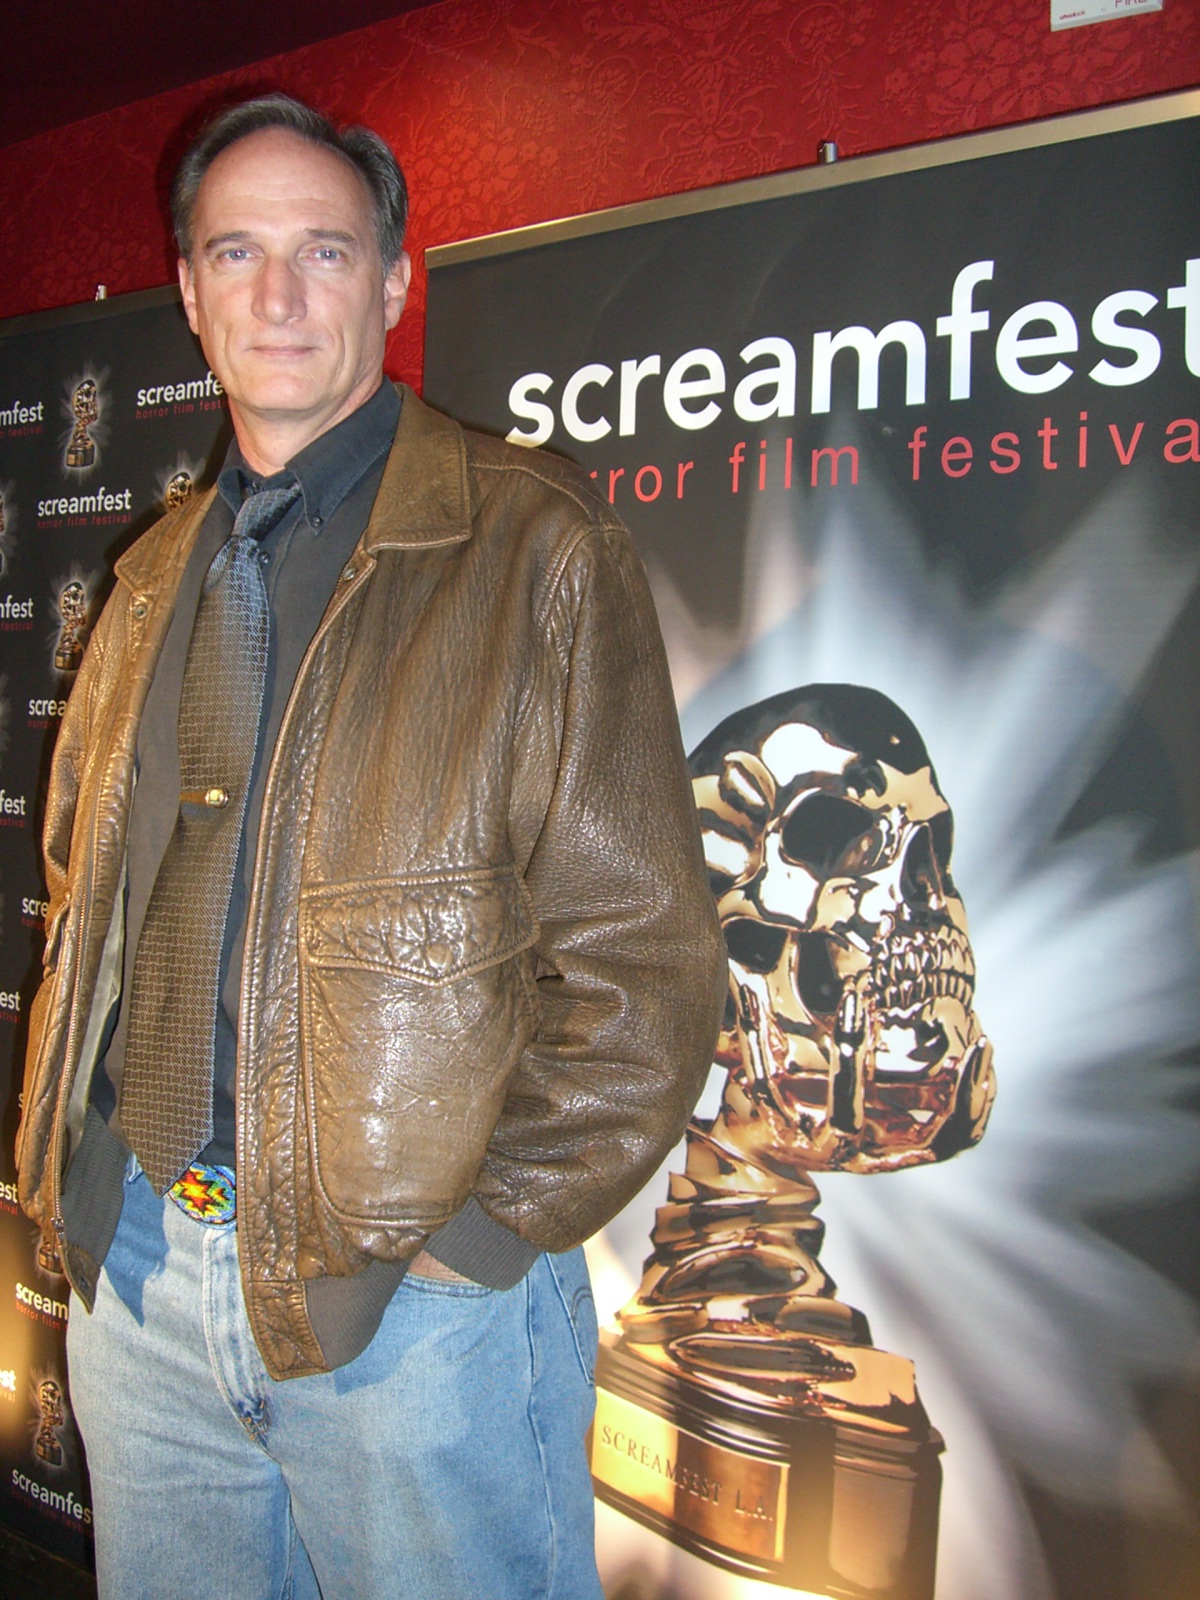 Screamfest 2007